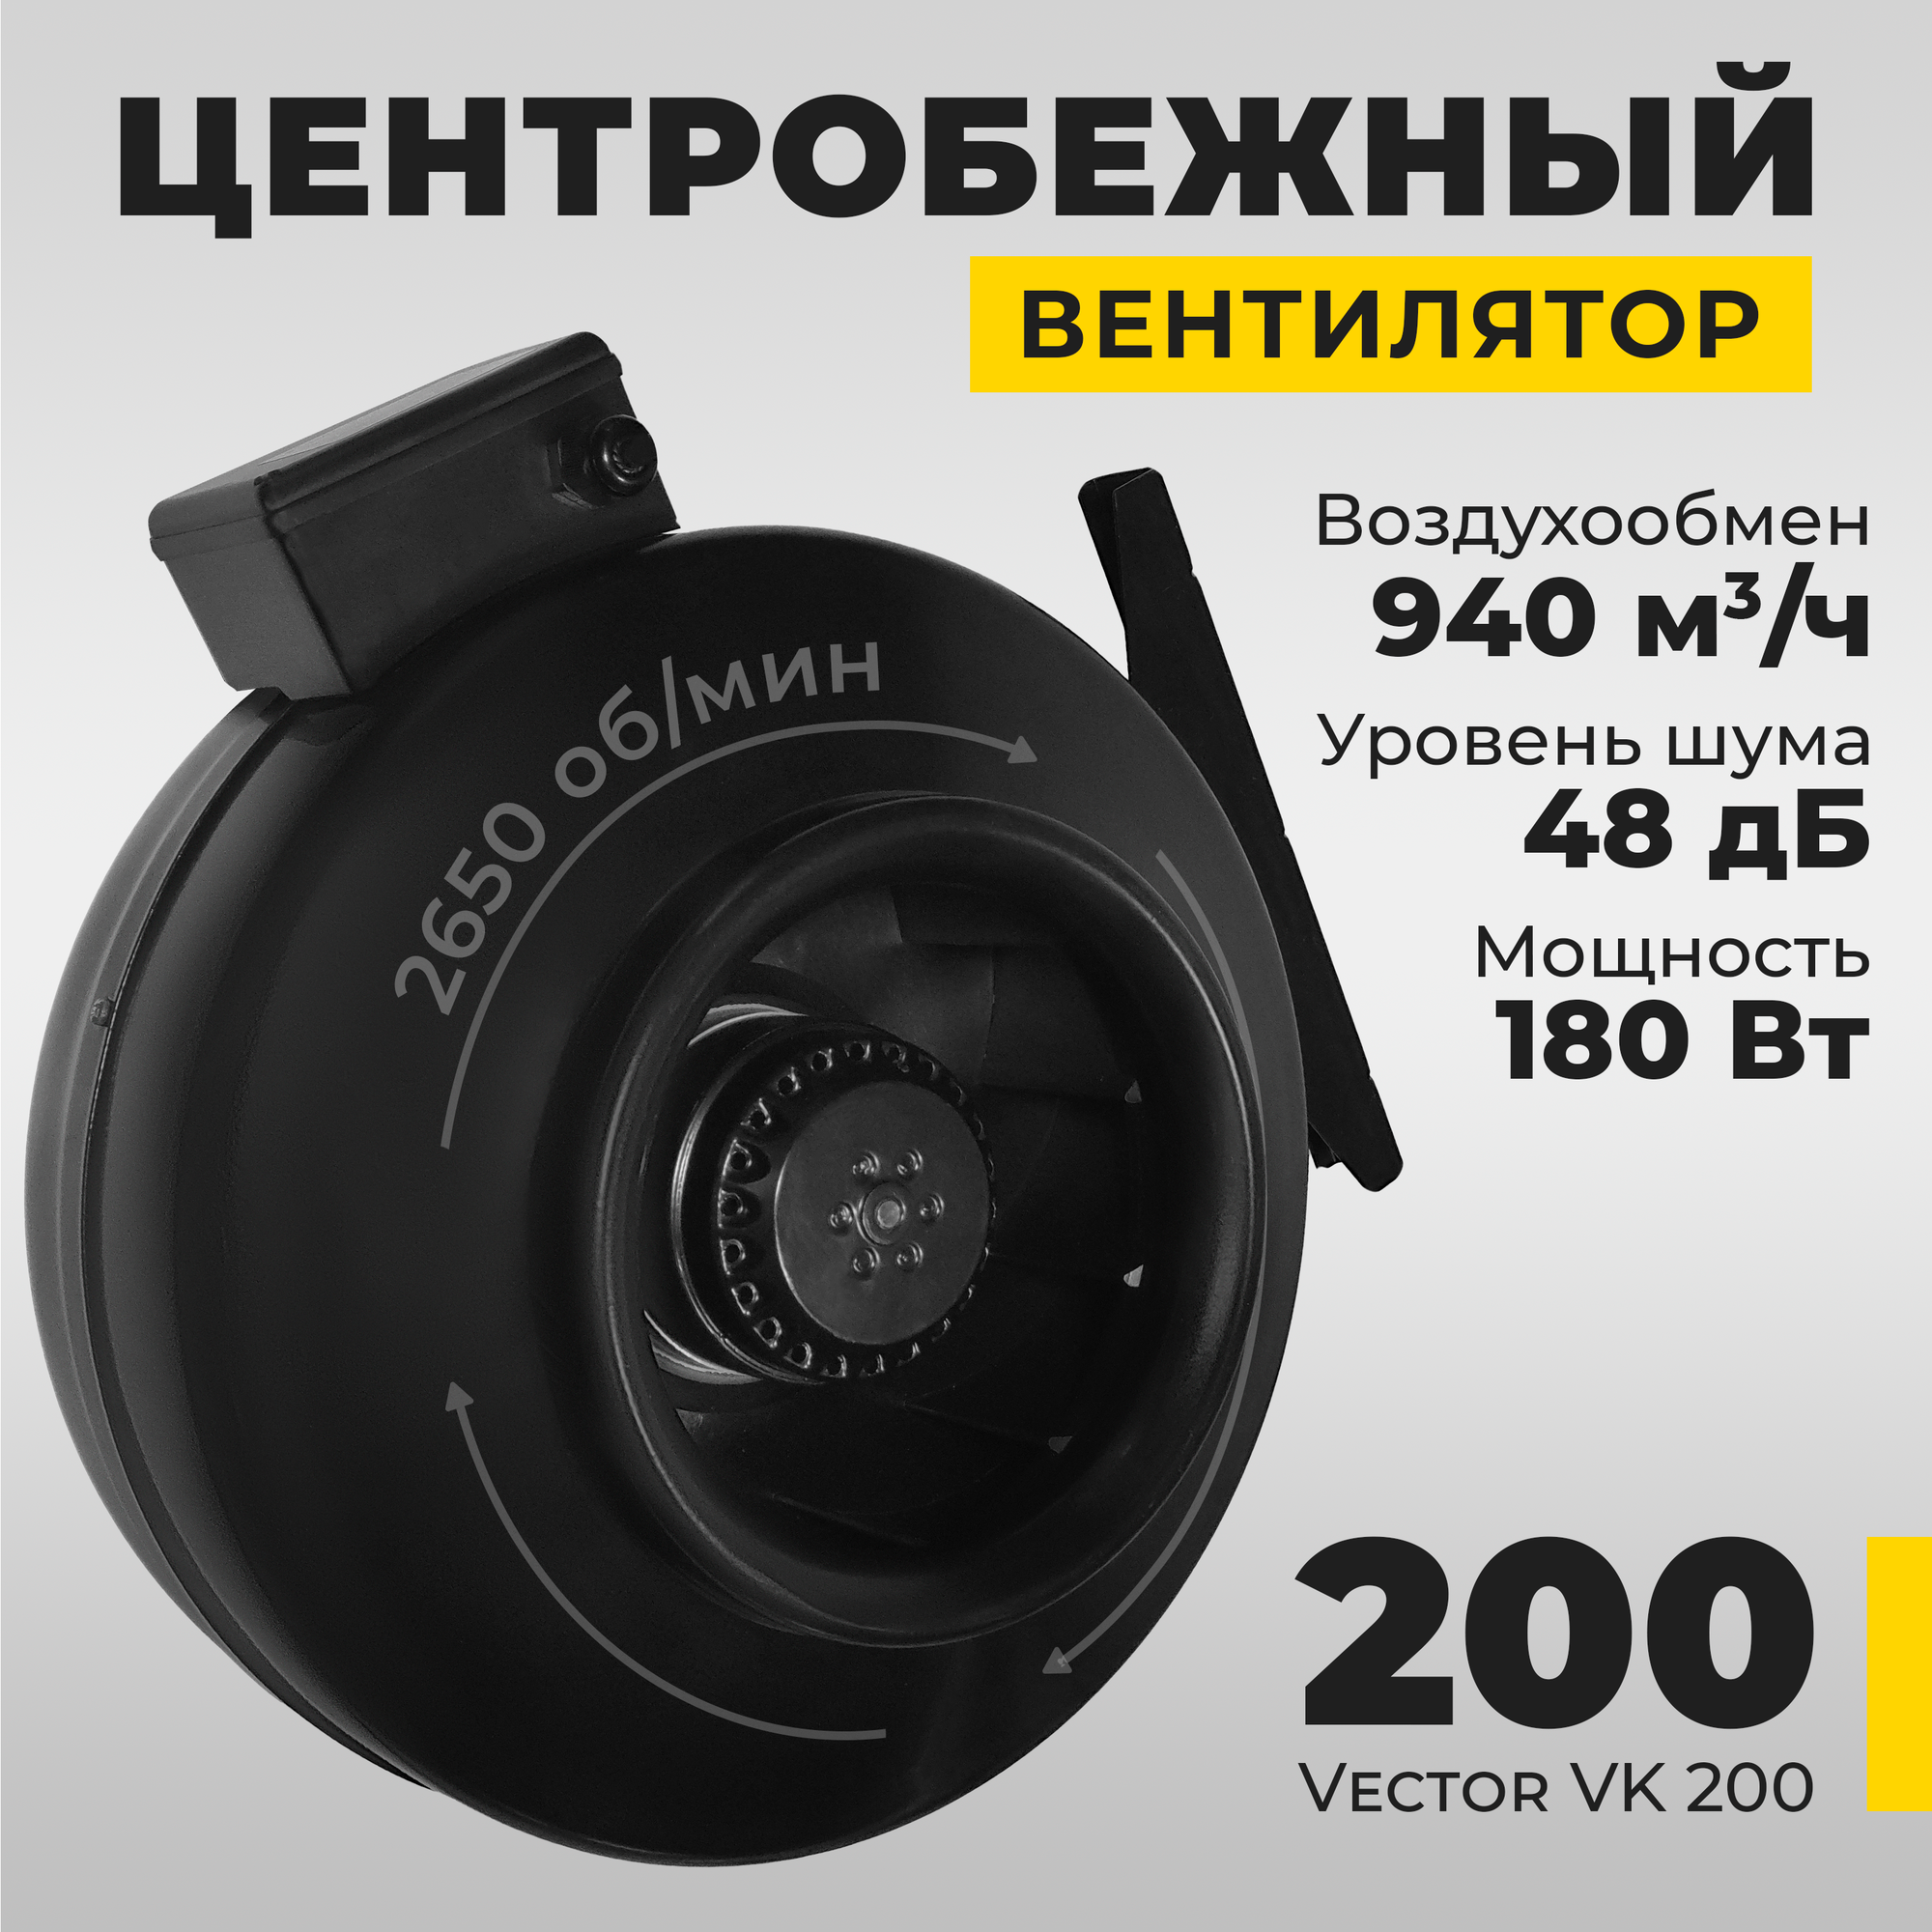 Вентилятор вытяжной Vector VK200 промышленный , воздухообмен 940 м3/ч, 180Вт, черный